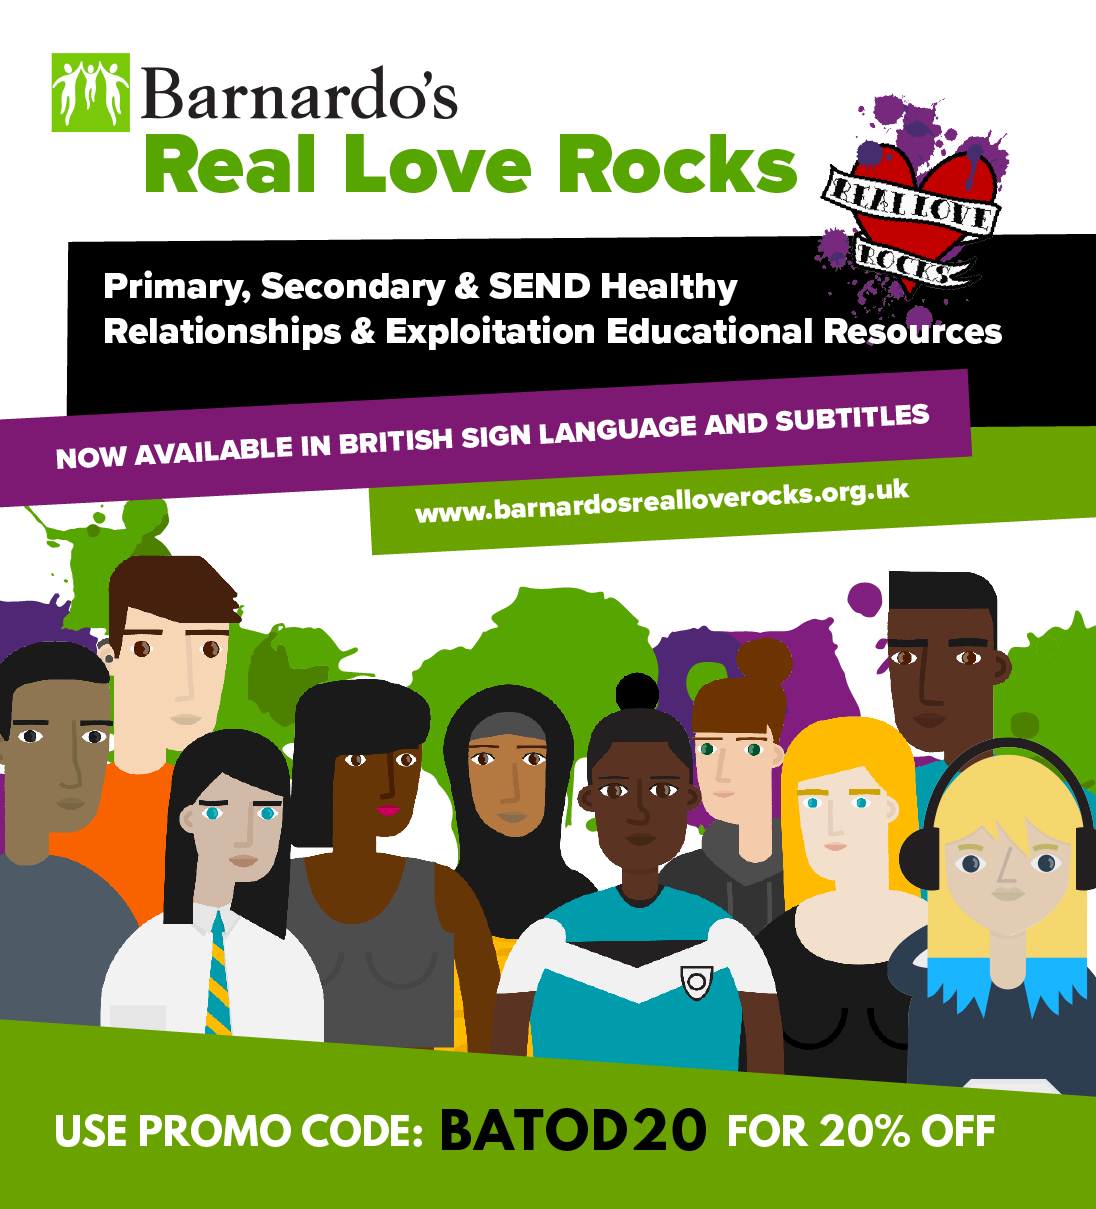 Barnardos Real Love Rocks advert